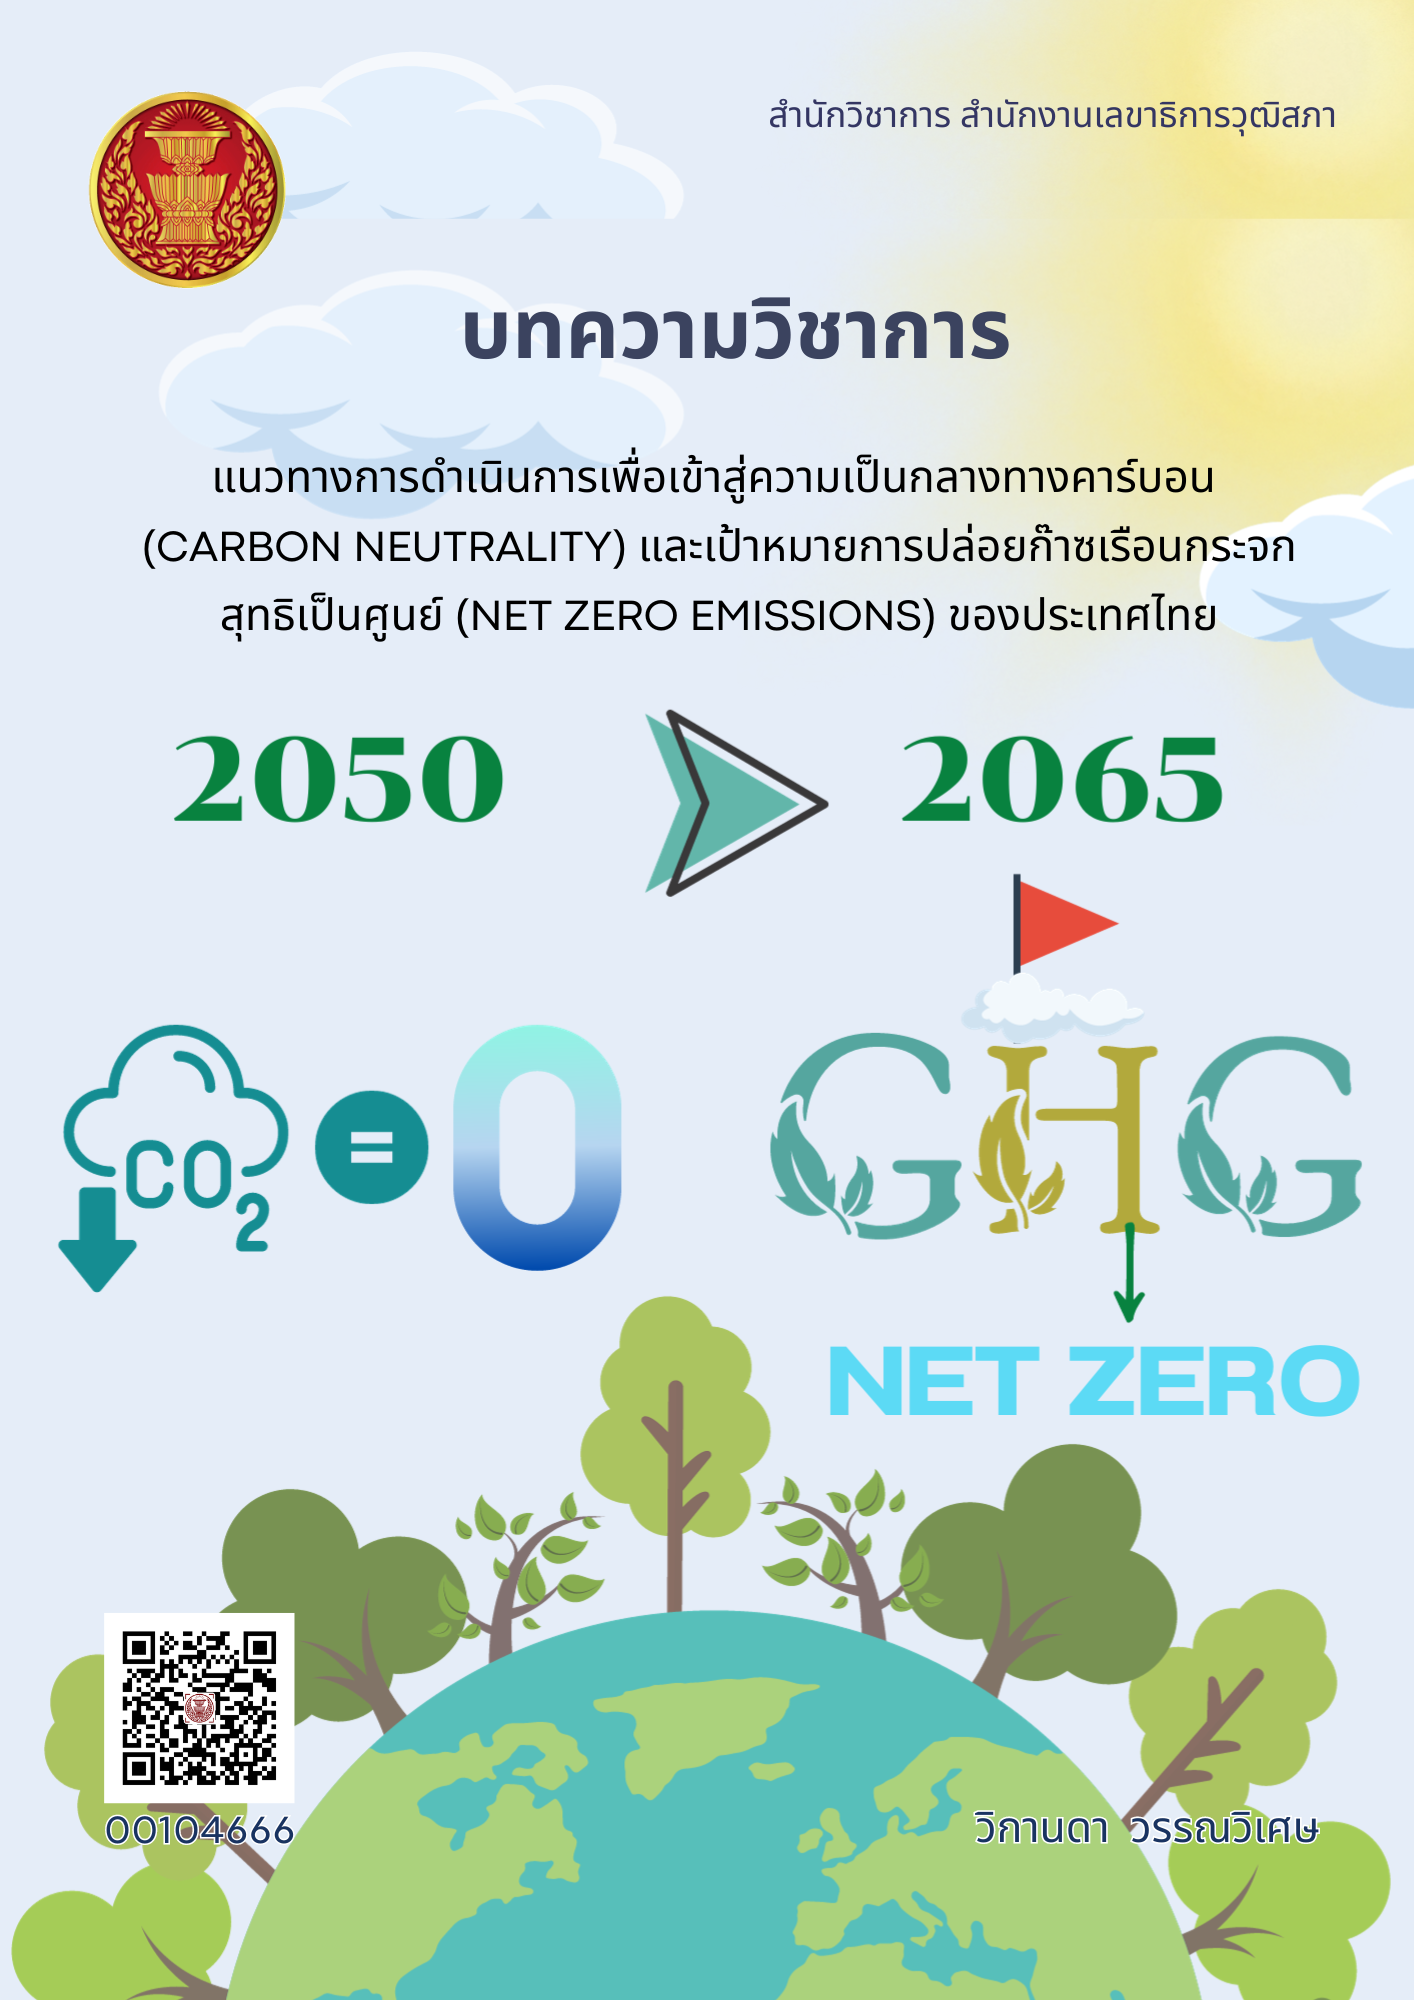 แนวทางการดำเนินการเพื่อเข้าสู่ความเป็นกลางทางคาร์บอน (Carbon Neutrality) และเป้าหมายการปล่อยก๊าซเรือนกระจกสุทธิเป็นศูนย์ (Net Zero Emissions) ของประเทศไทย